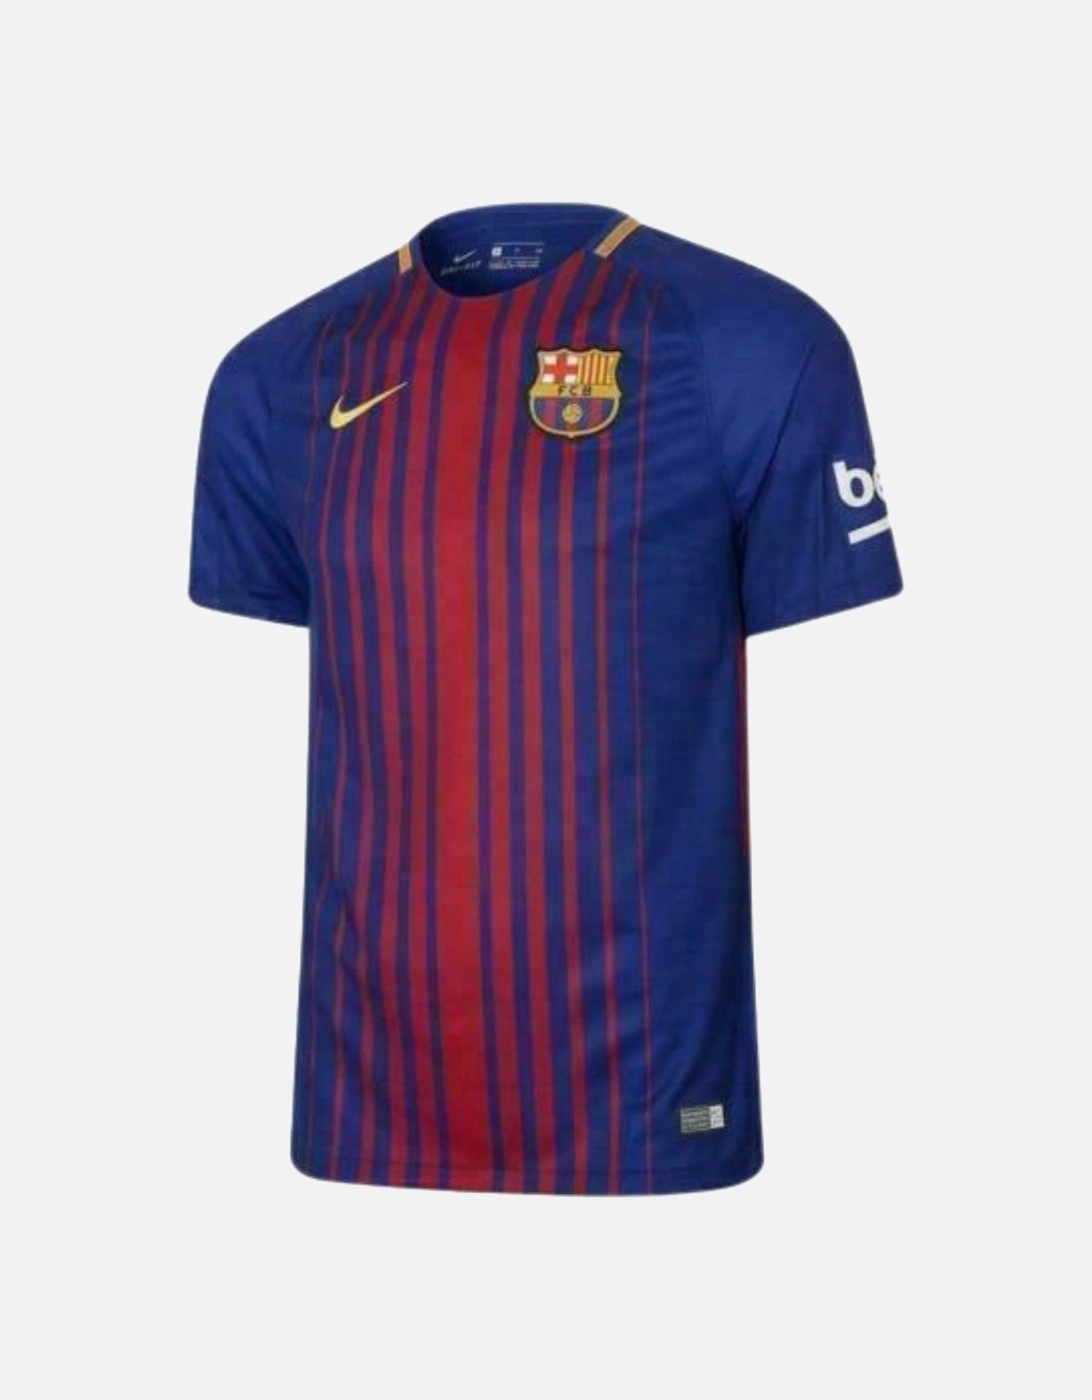 Barcelona Home Shirt Football Top, 2 of 1